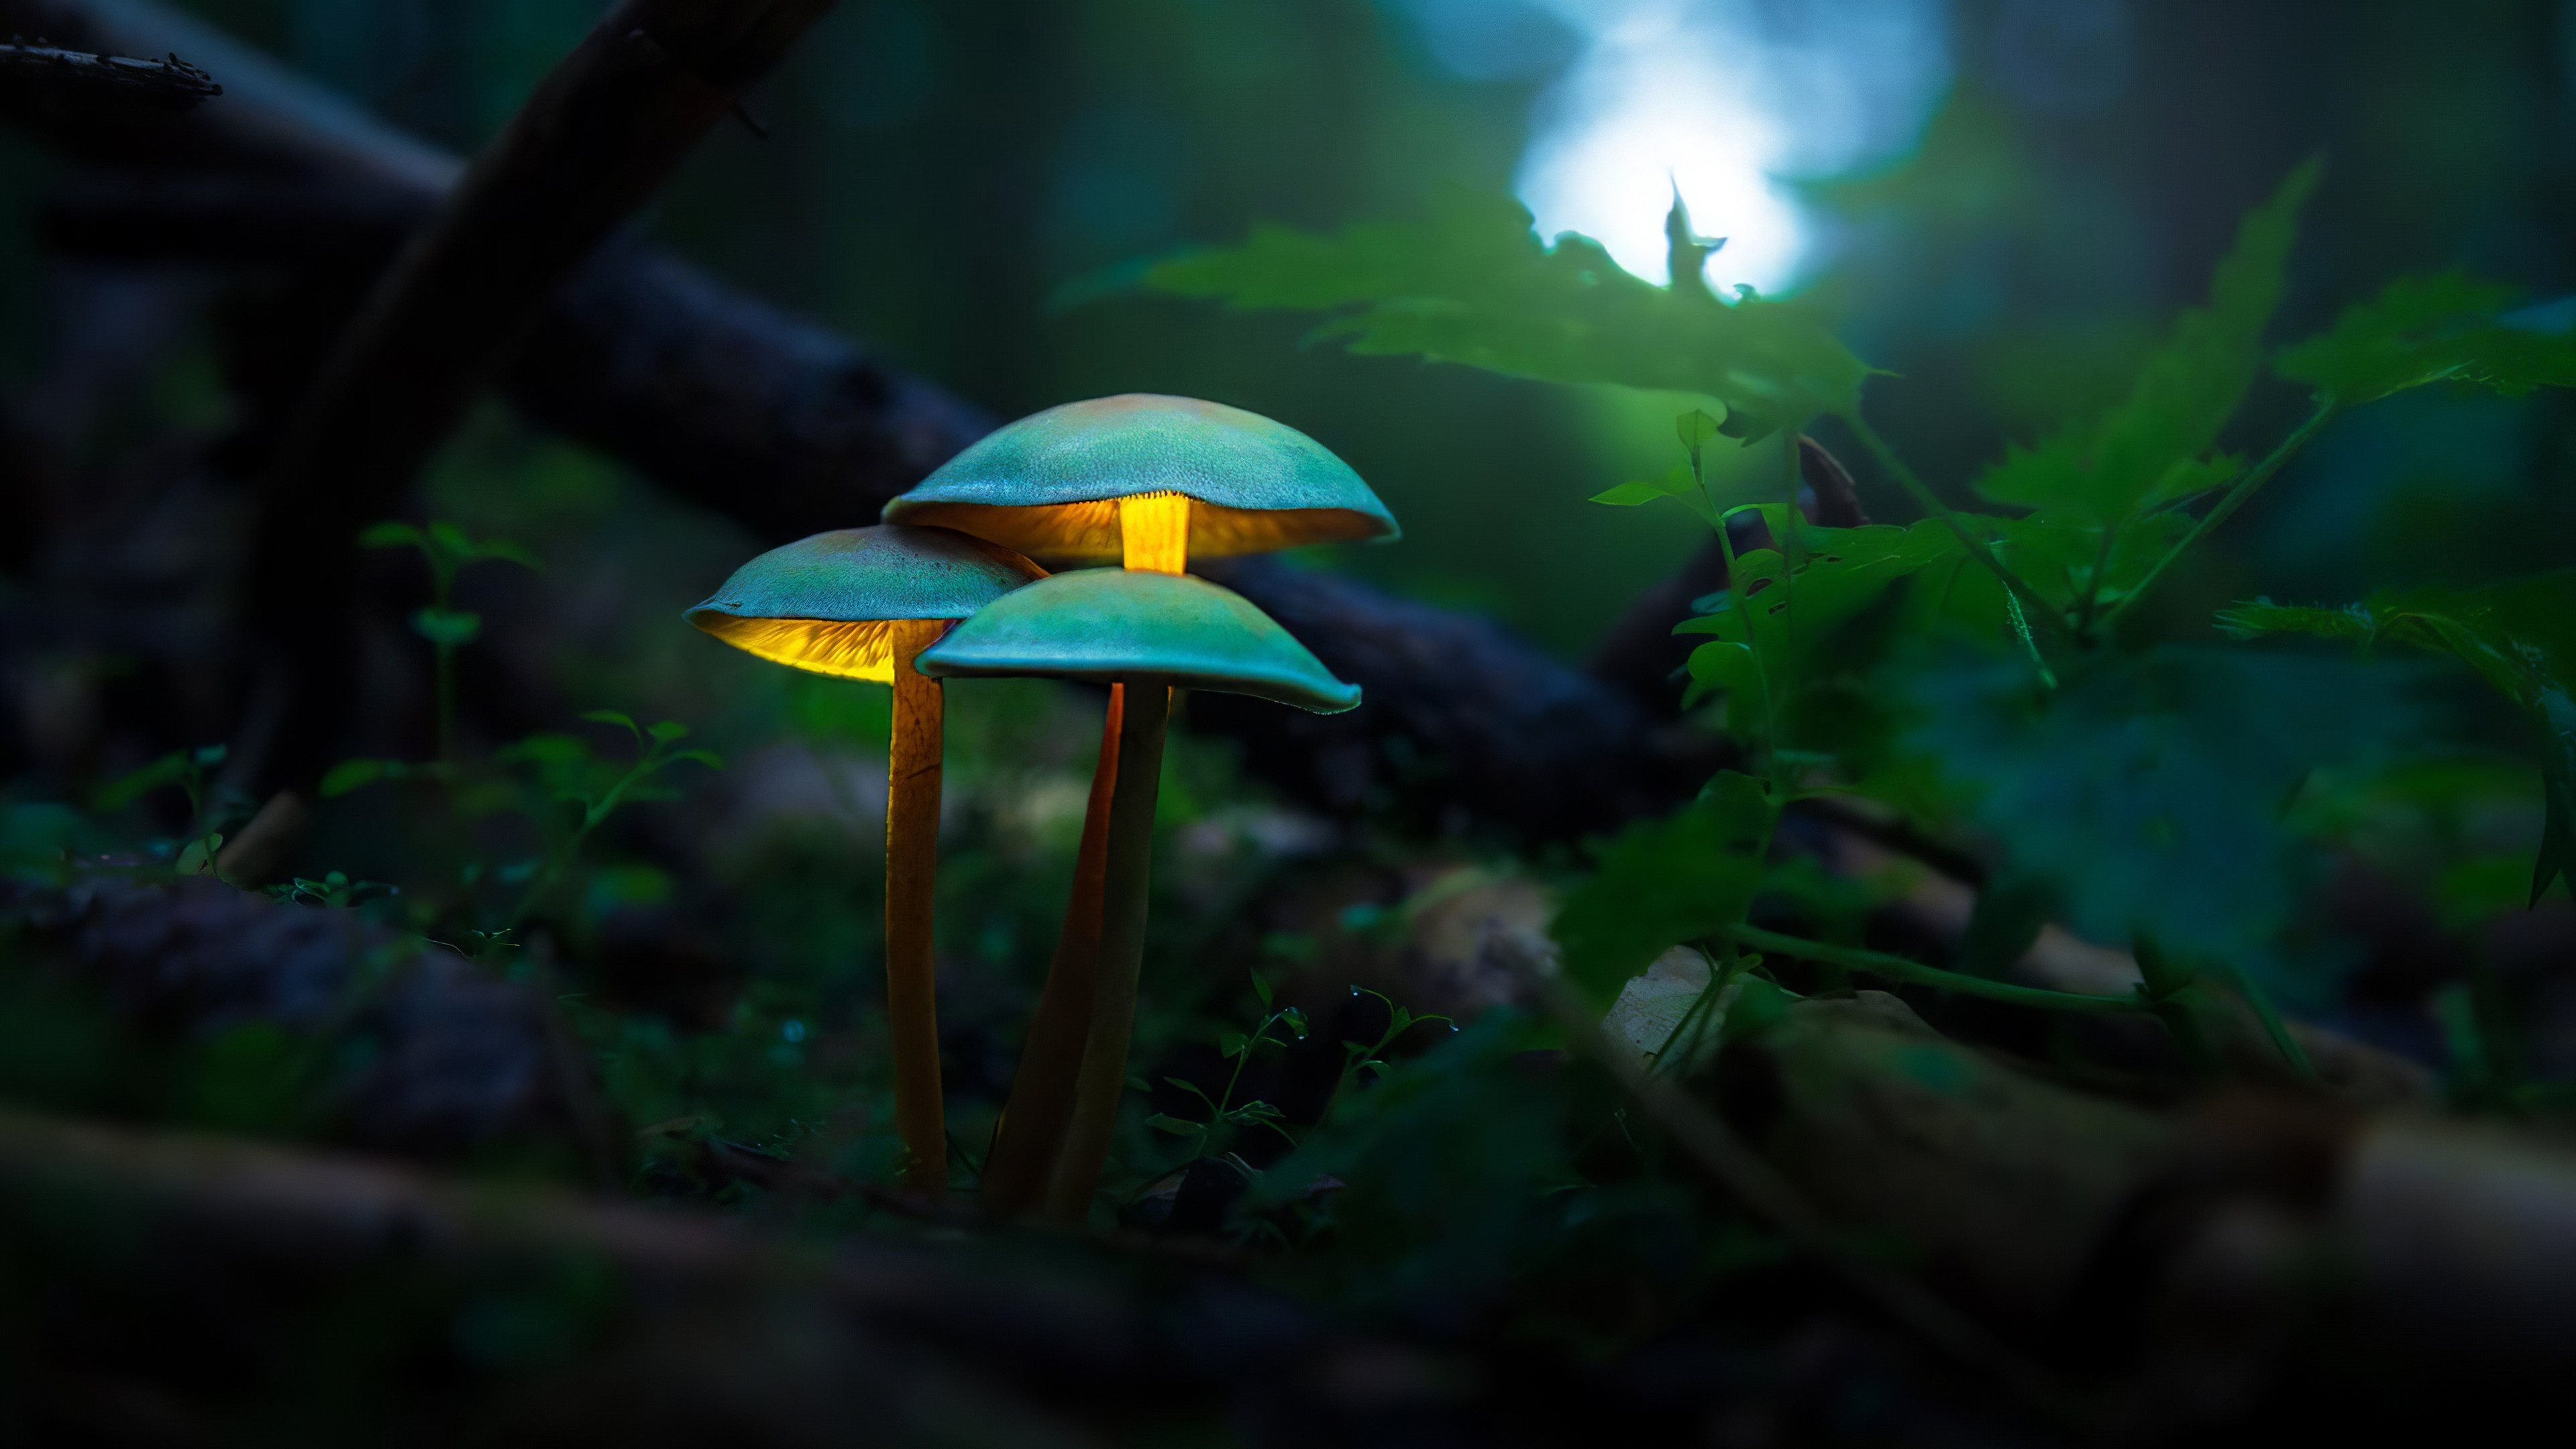 Macro Mushrooms best picture